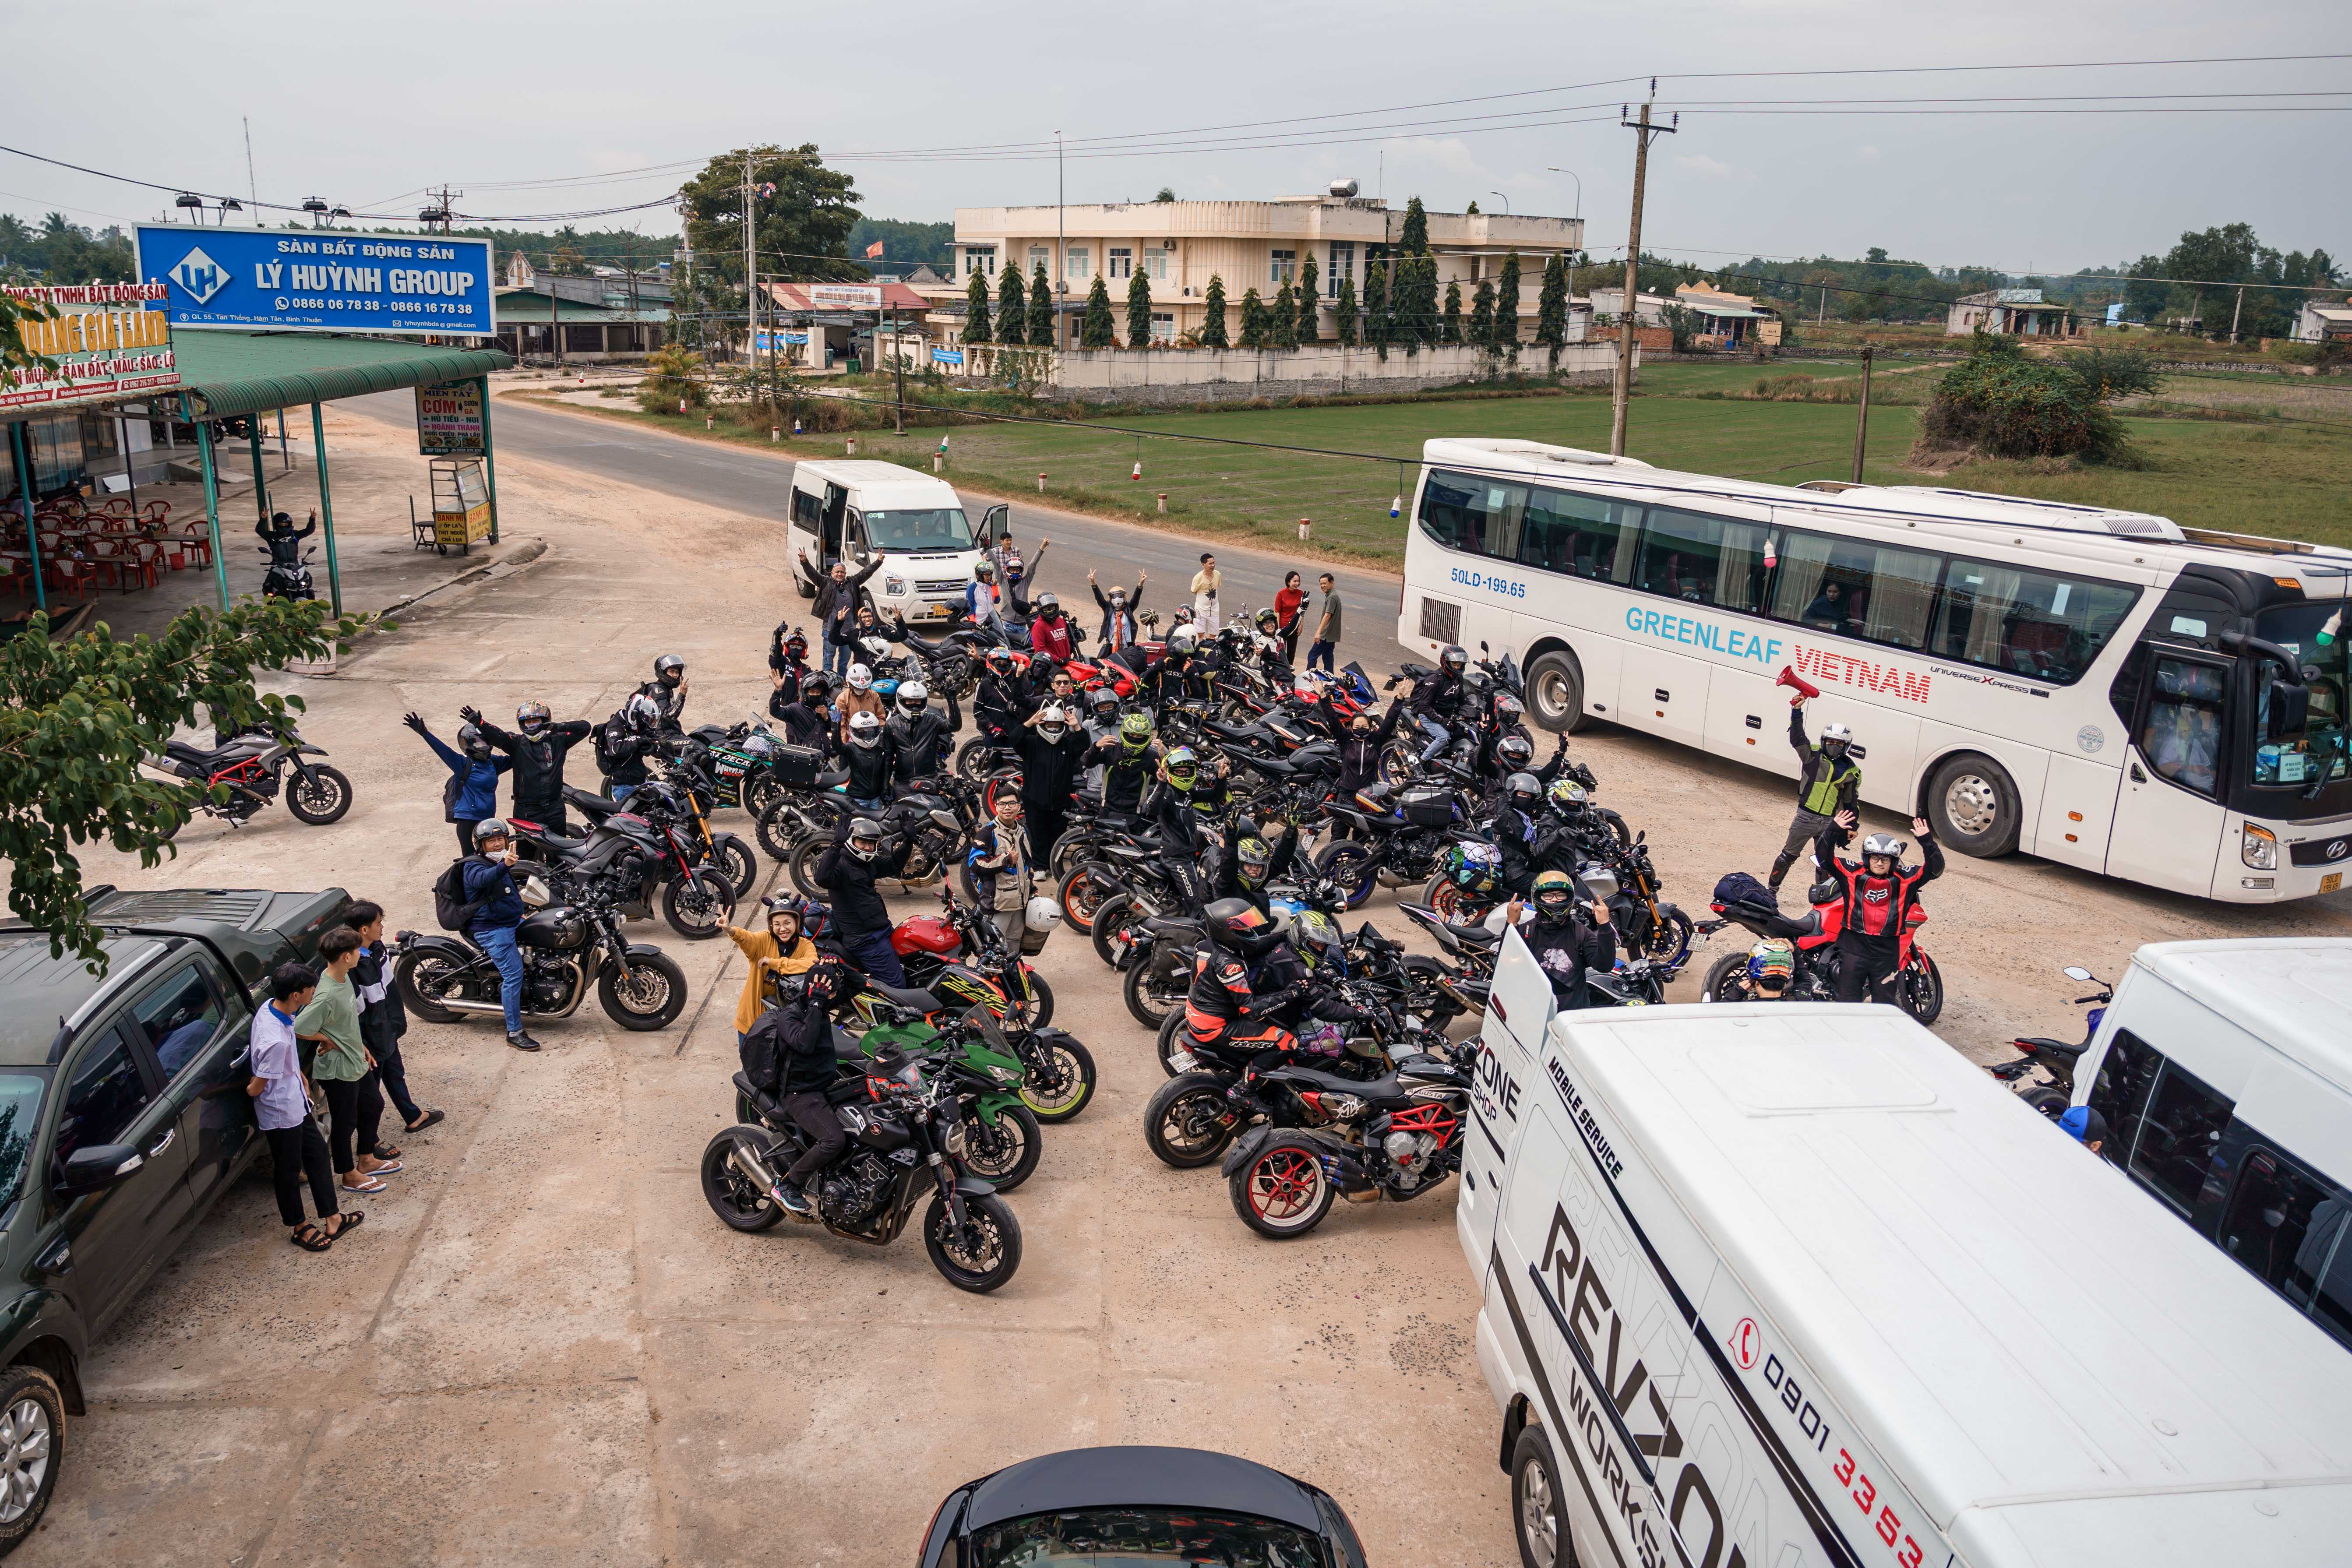 Revzone Phan Thiet Ride: Toàn cảnh hành trình 500km hội ngộ tại Phan Thiết Revzone Phan Thiet Ride (19).jpg